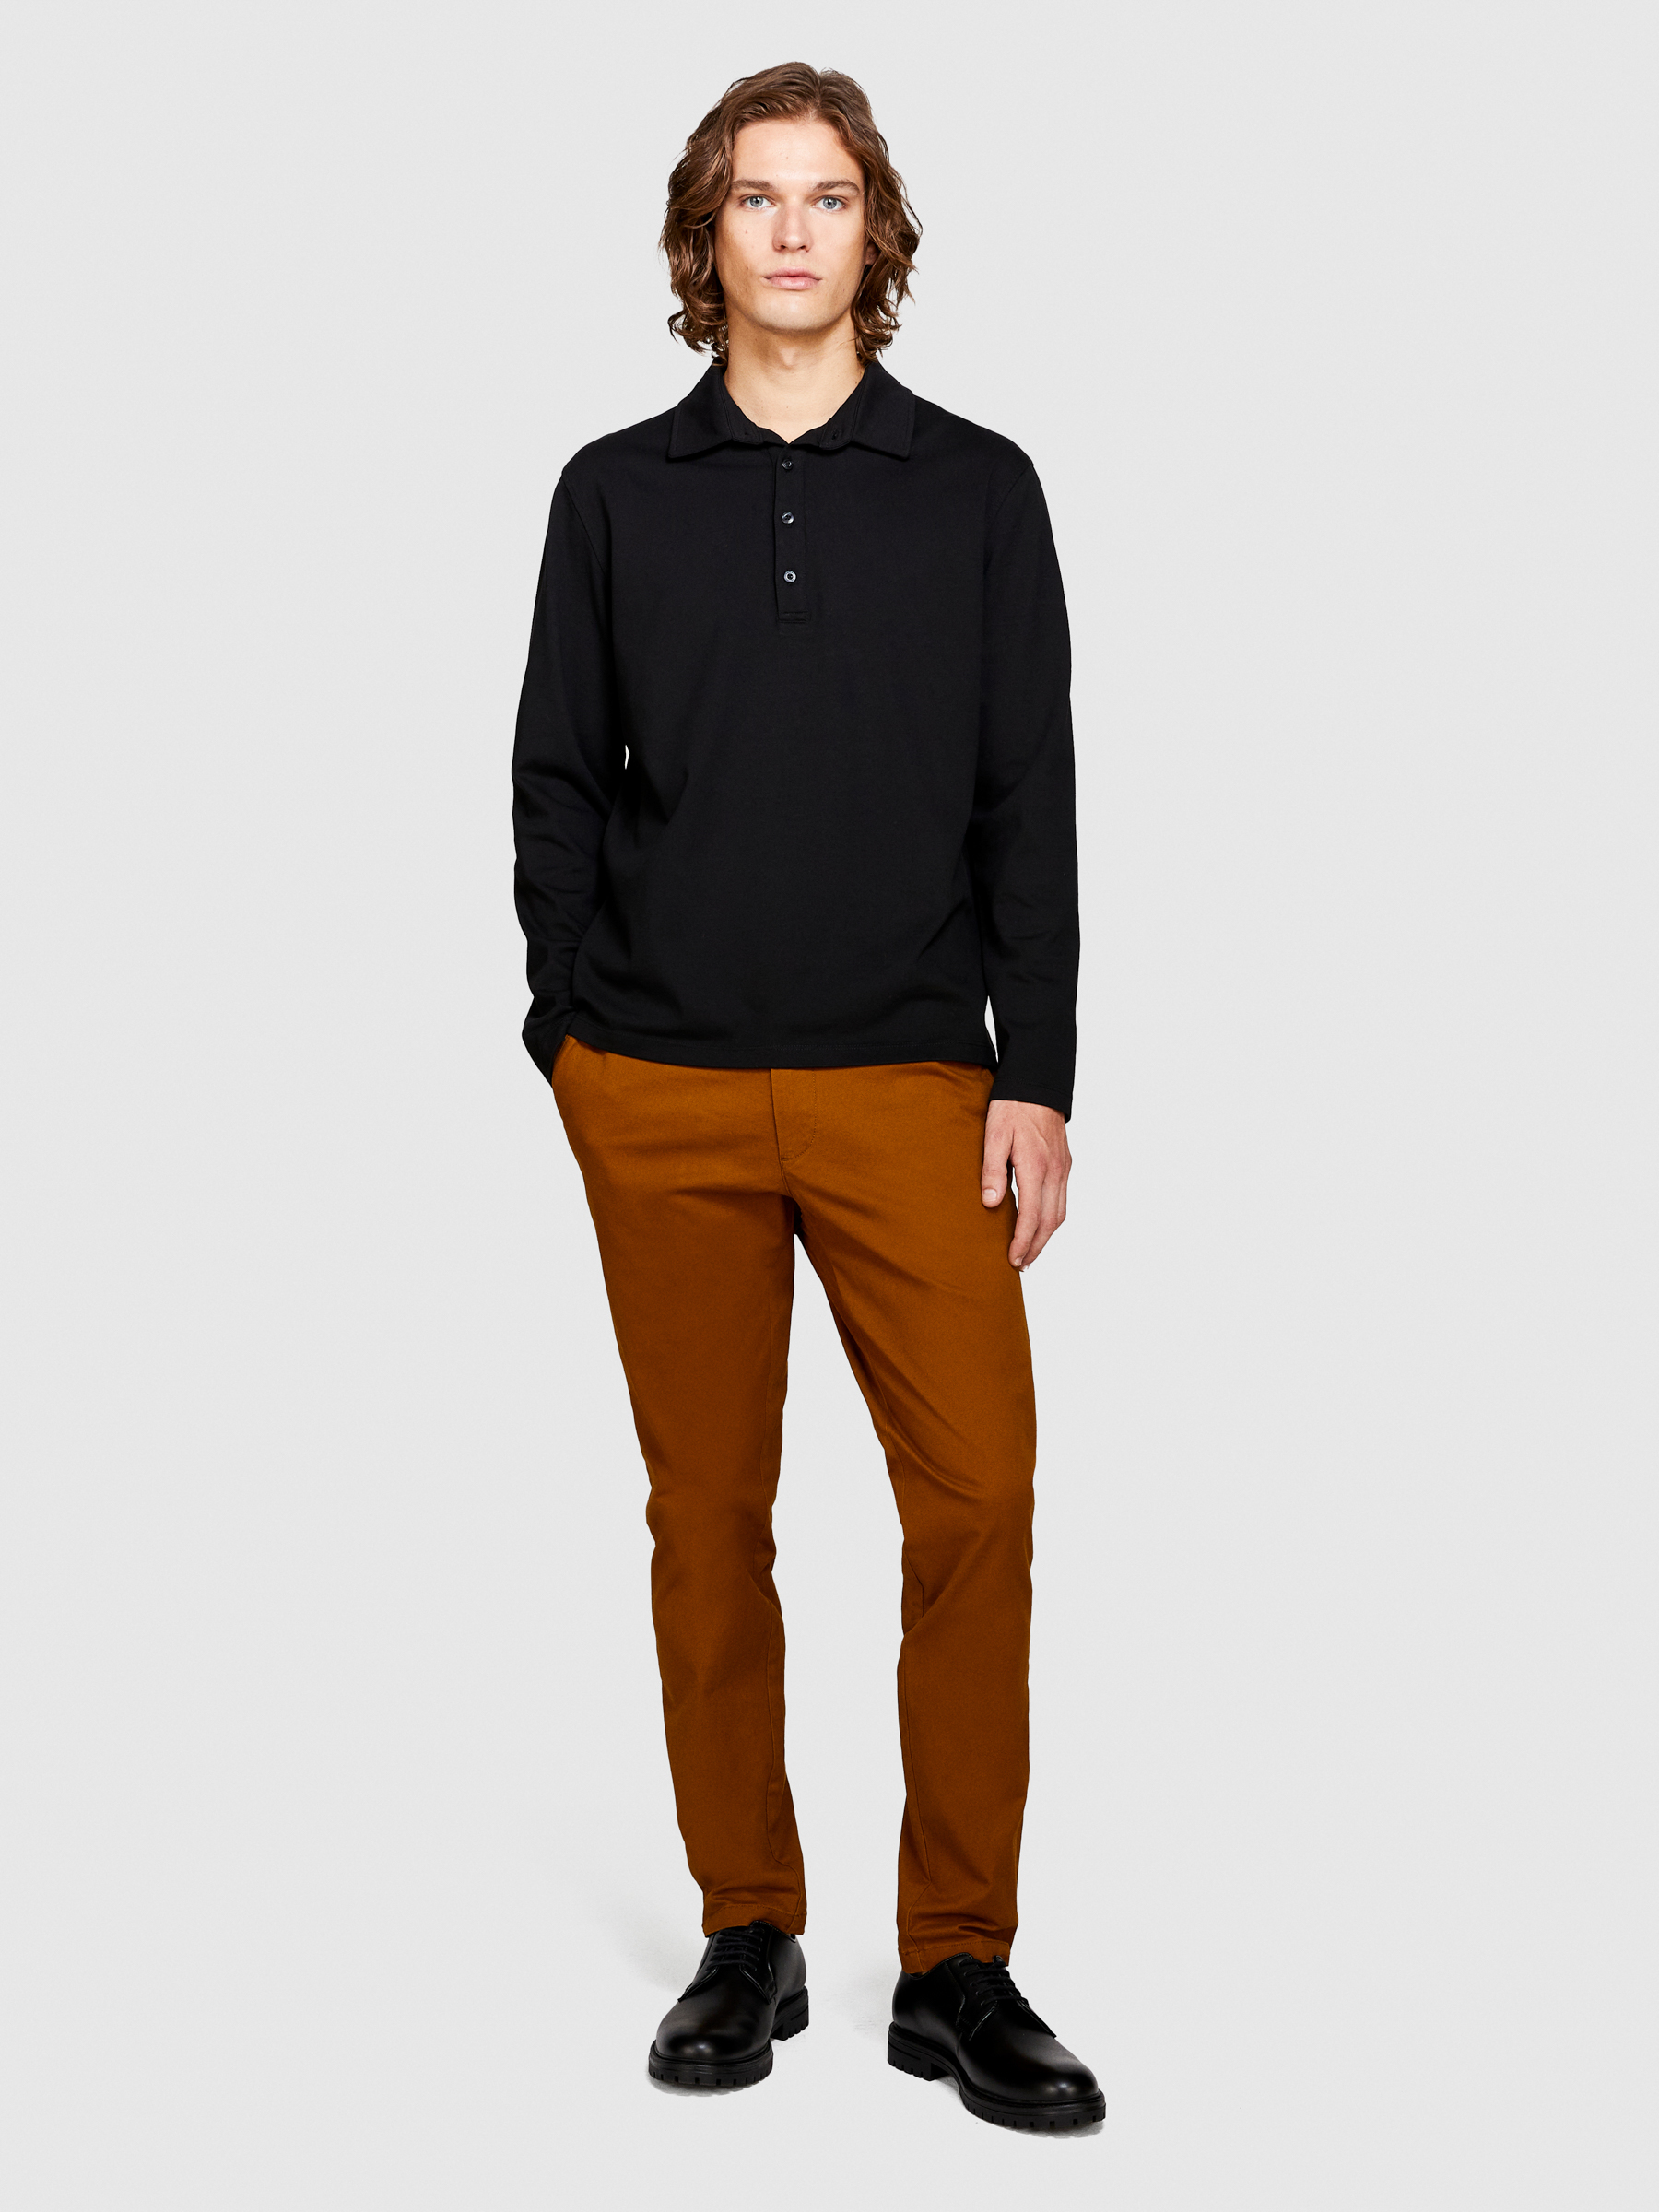 Sisley - Long Sleeve Polo, Man, Black, Size: S